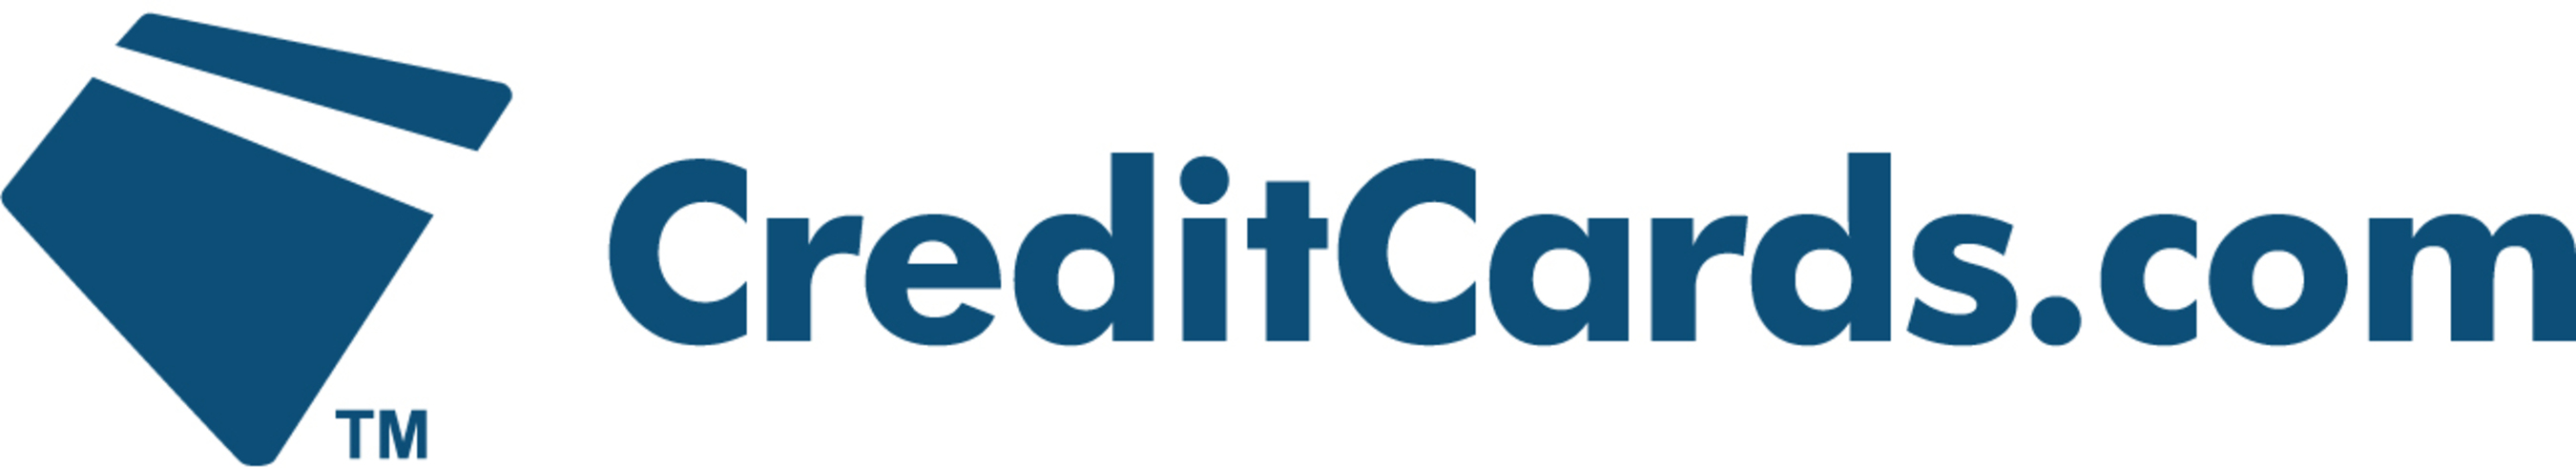 CREDITCARDS.COM logo. (PRNewsFoto/CREDITCARDS.COM)